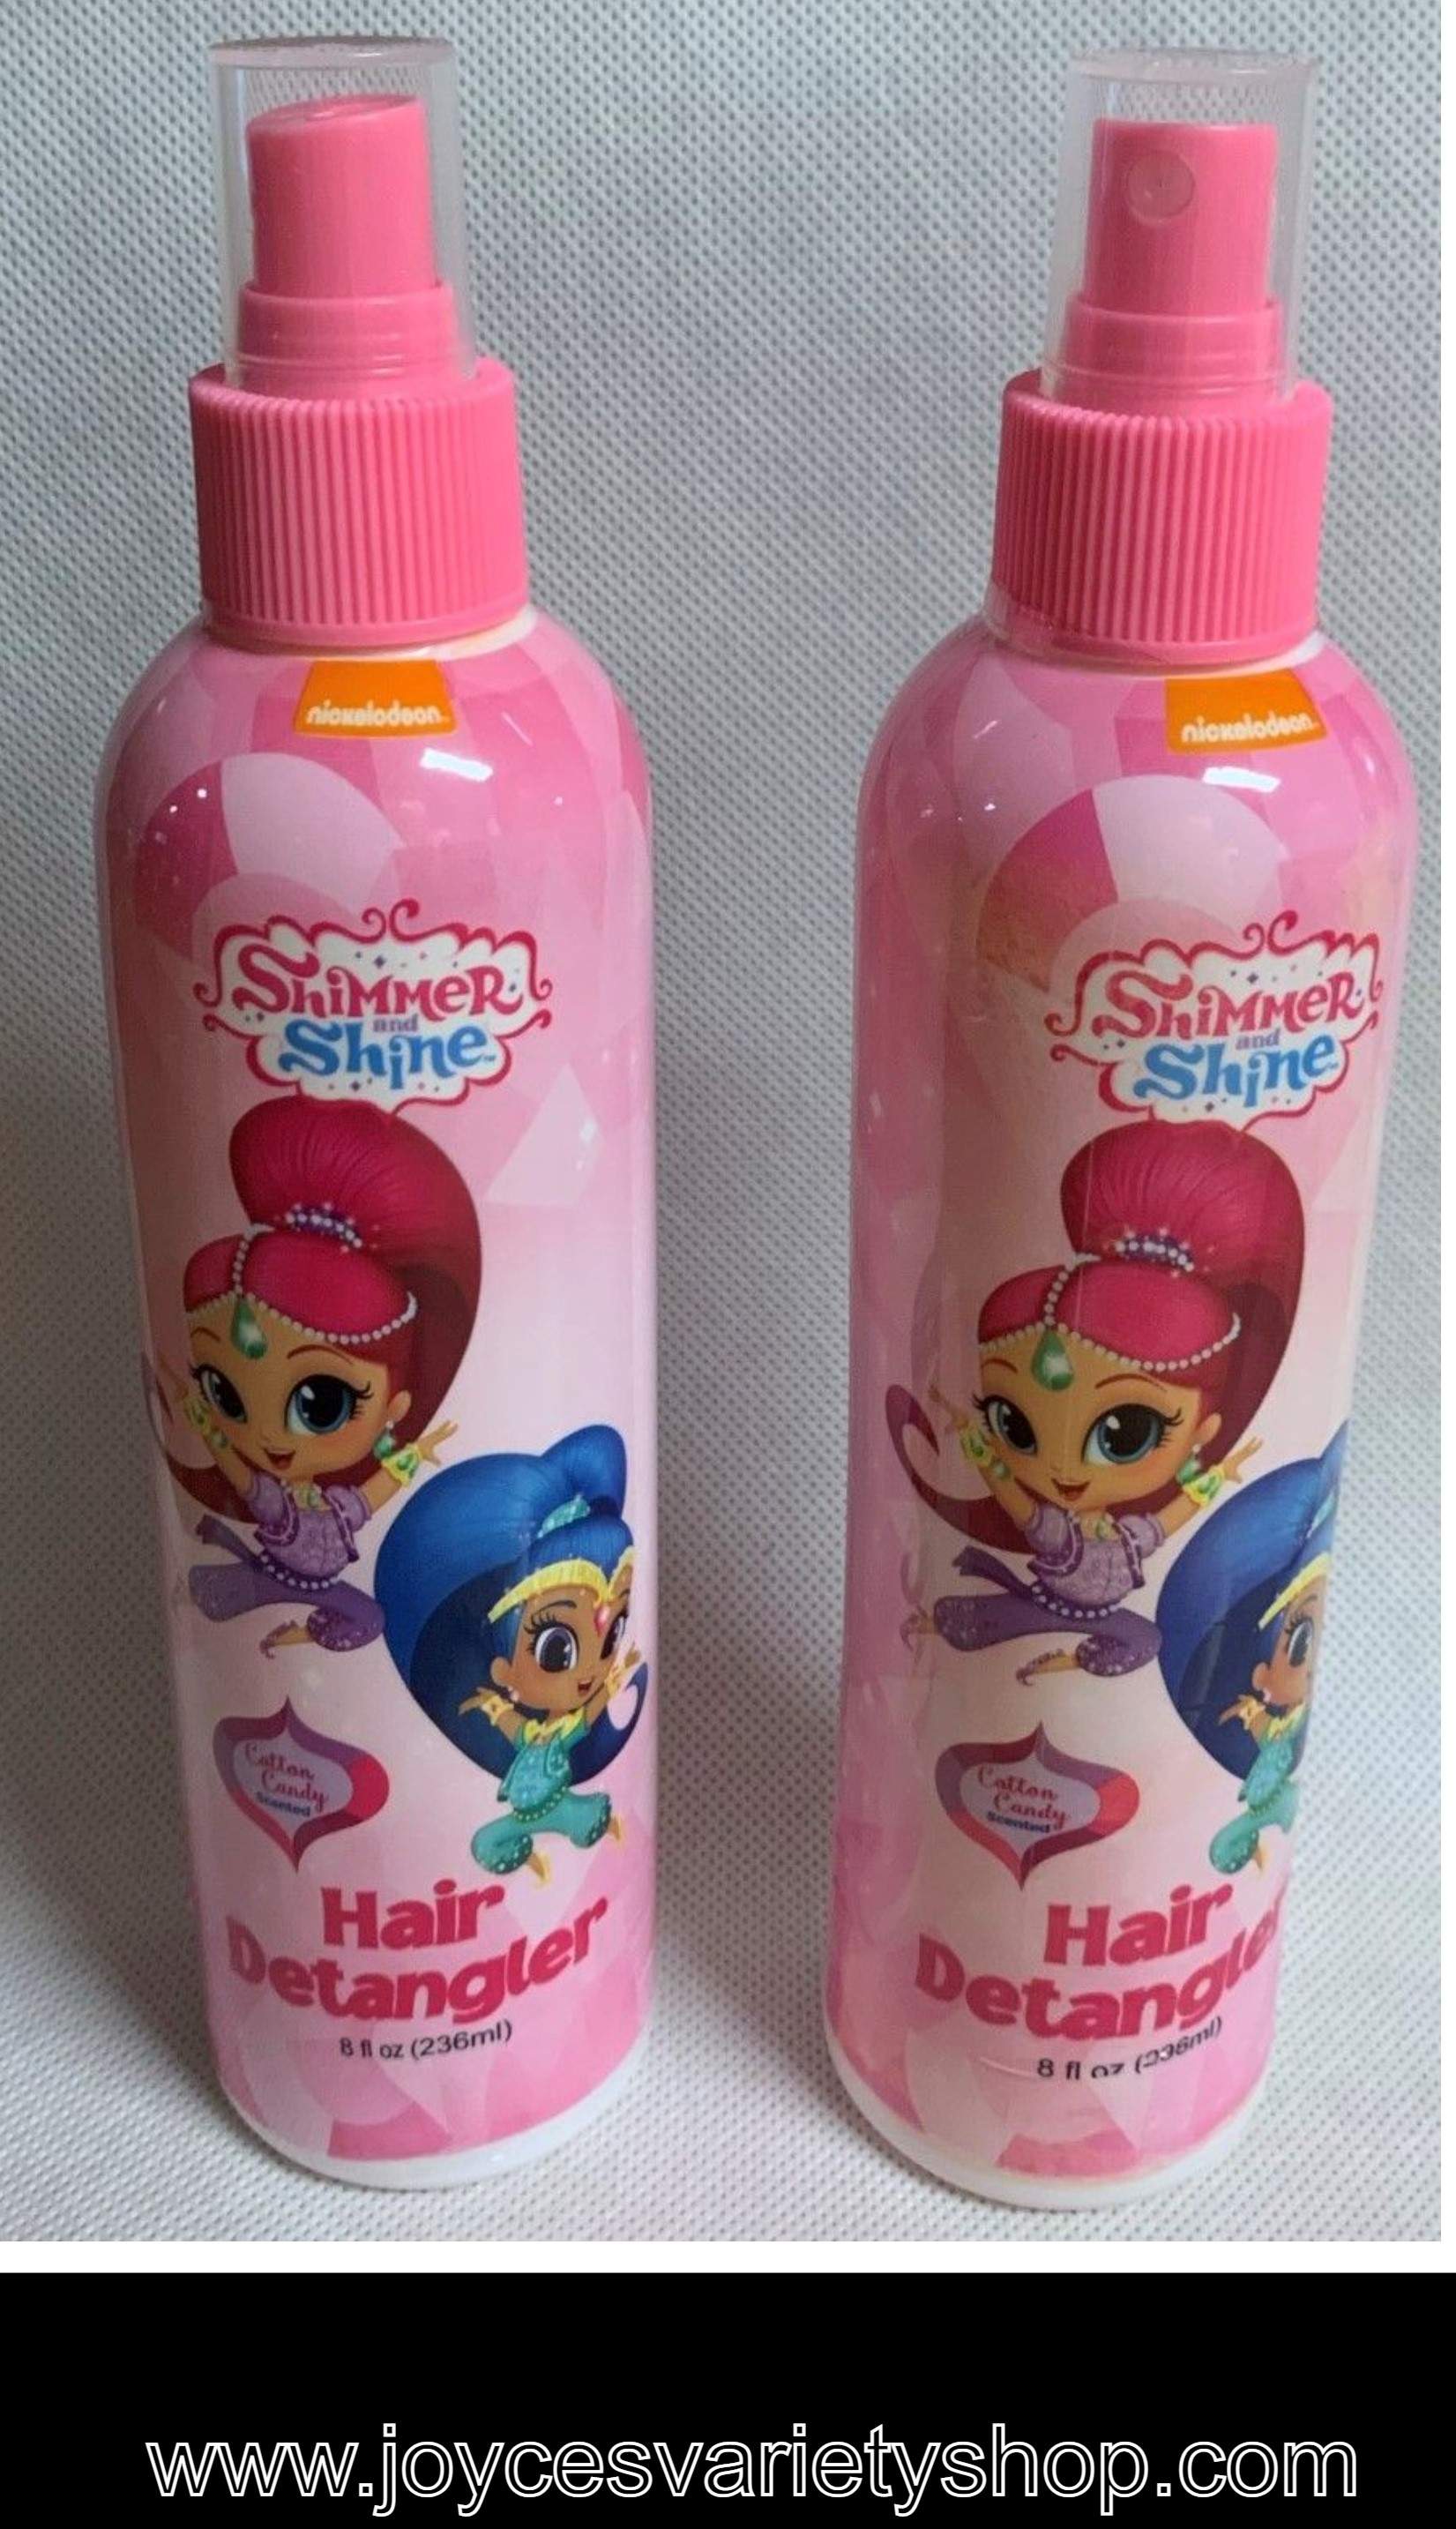 Nickelodeon Shimmer Shine Hair Detangler Spray 8 FL OZ Pack of 2 Cotton Candy